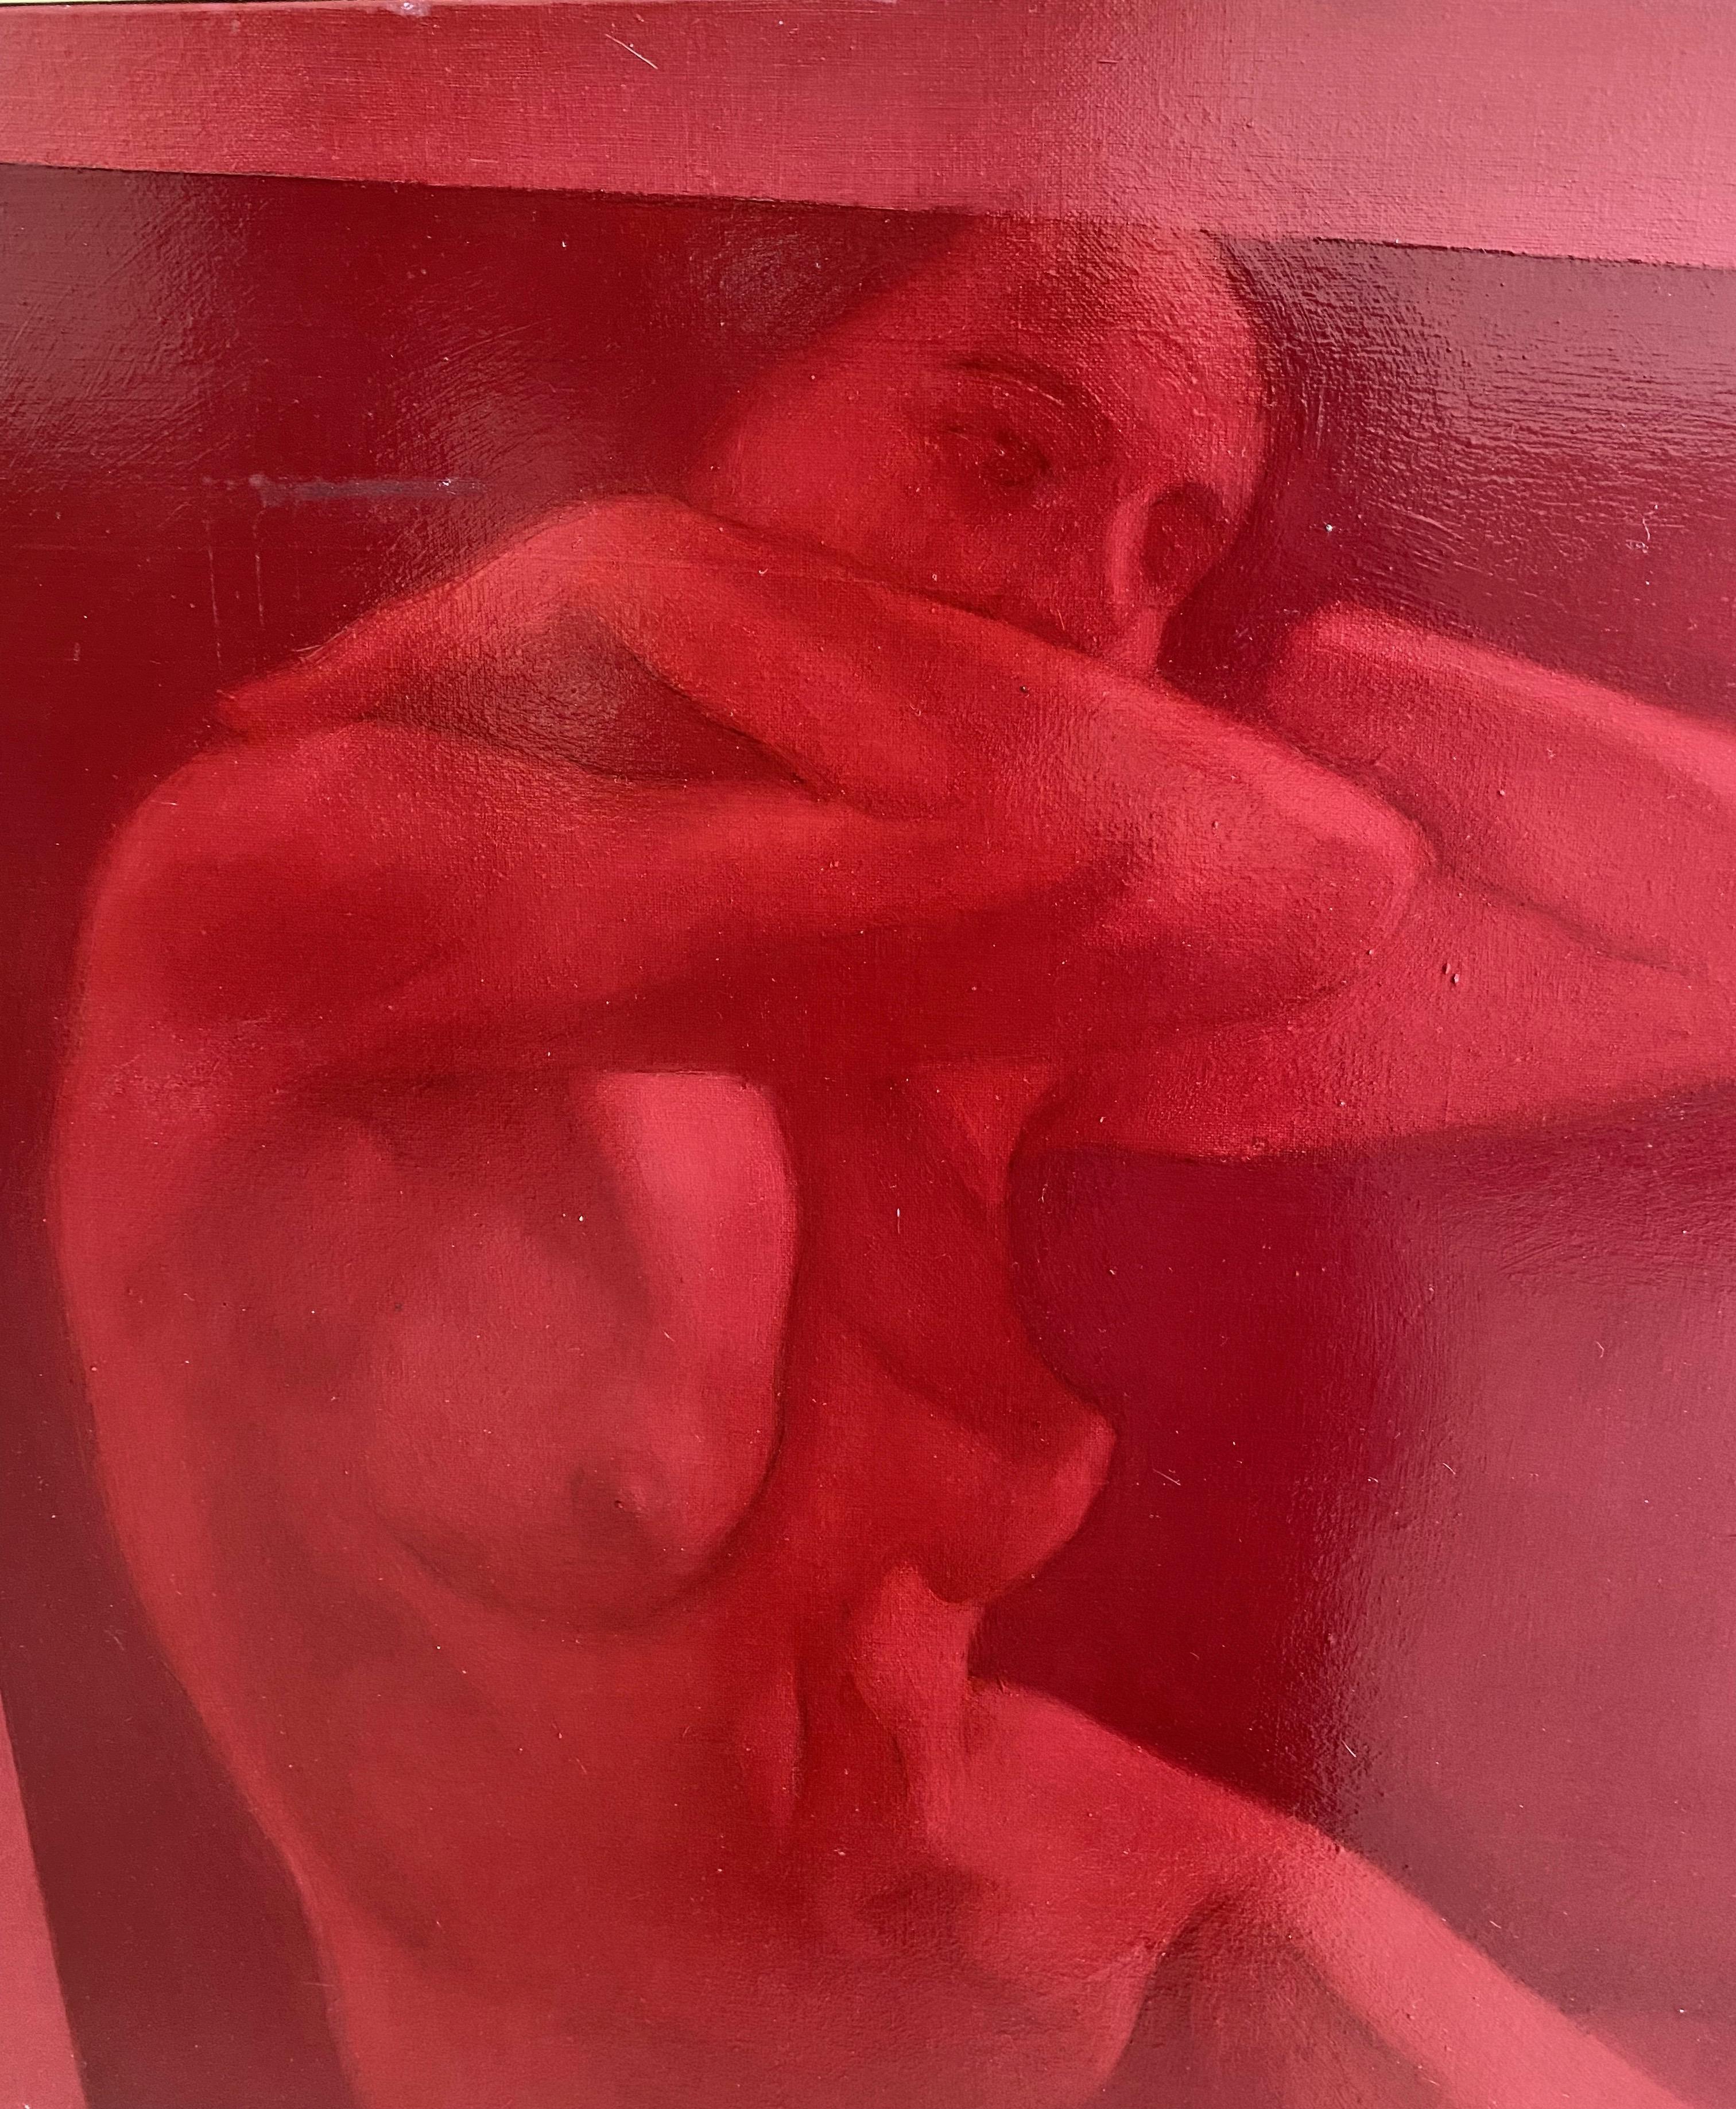 Portrait de femme nue élégante en rouge à l'huile sur toile du peintre italien contemporain - Contemporain Art par Simone Geraci